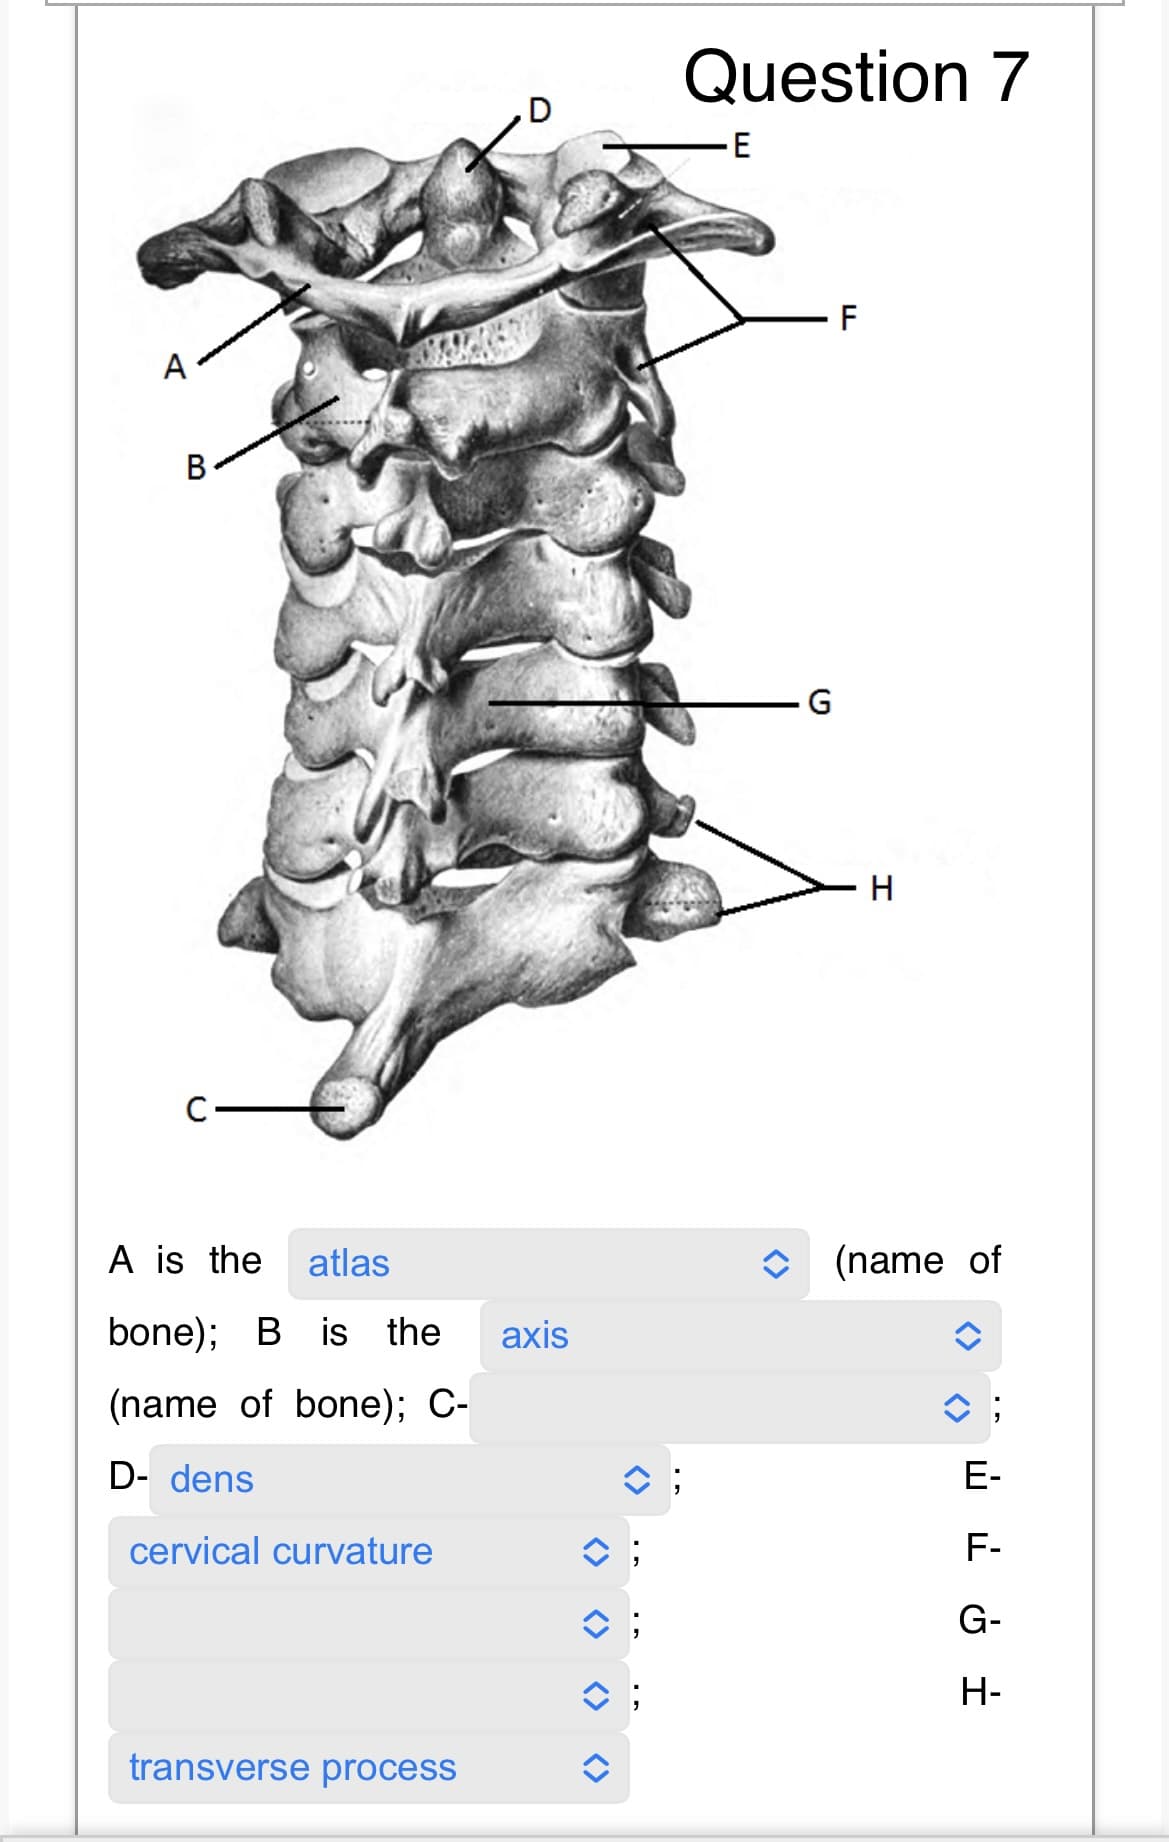 A
B
C
A is the atlas
bone); B is the axis
(name of bone); C-
D- dens
cervical curvature
transverse process
î;
î;
î;
Question 7
E
G
F
H
(name of
E-
F-
G-
H-